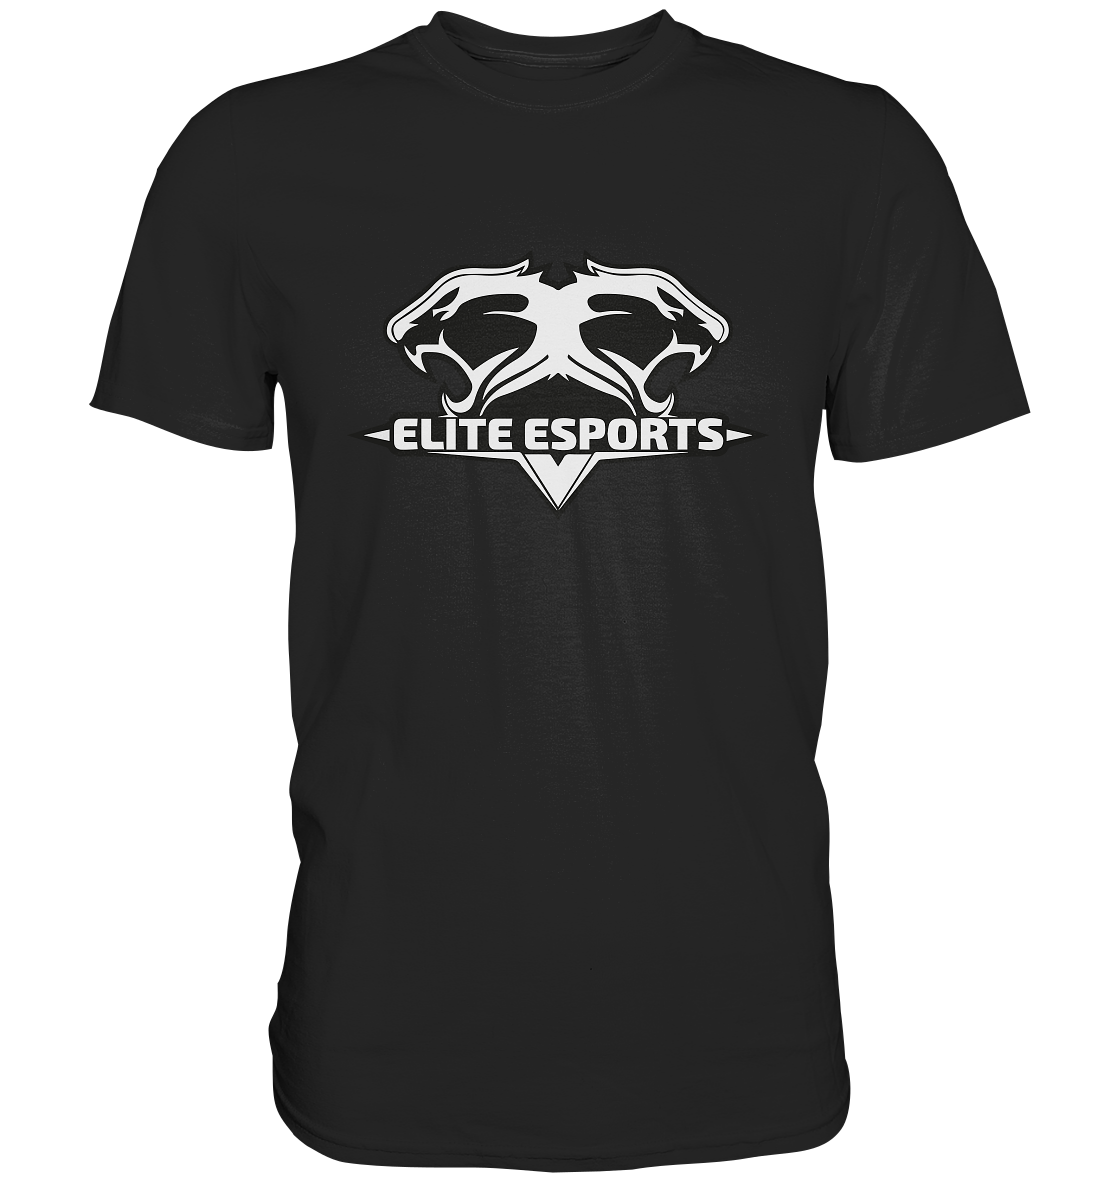 ELITE ESPORTS - Basic Shirt